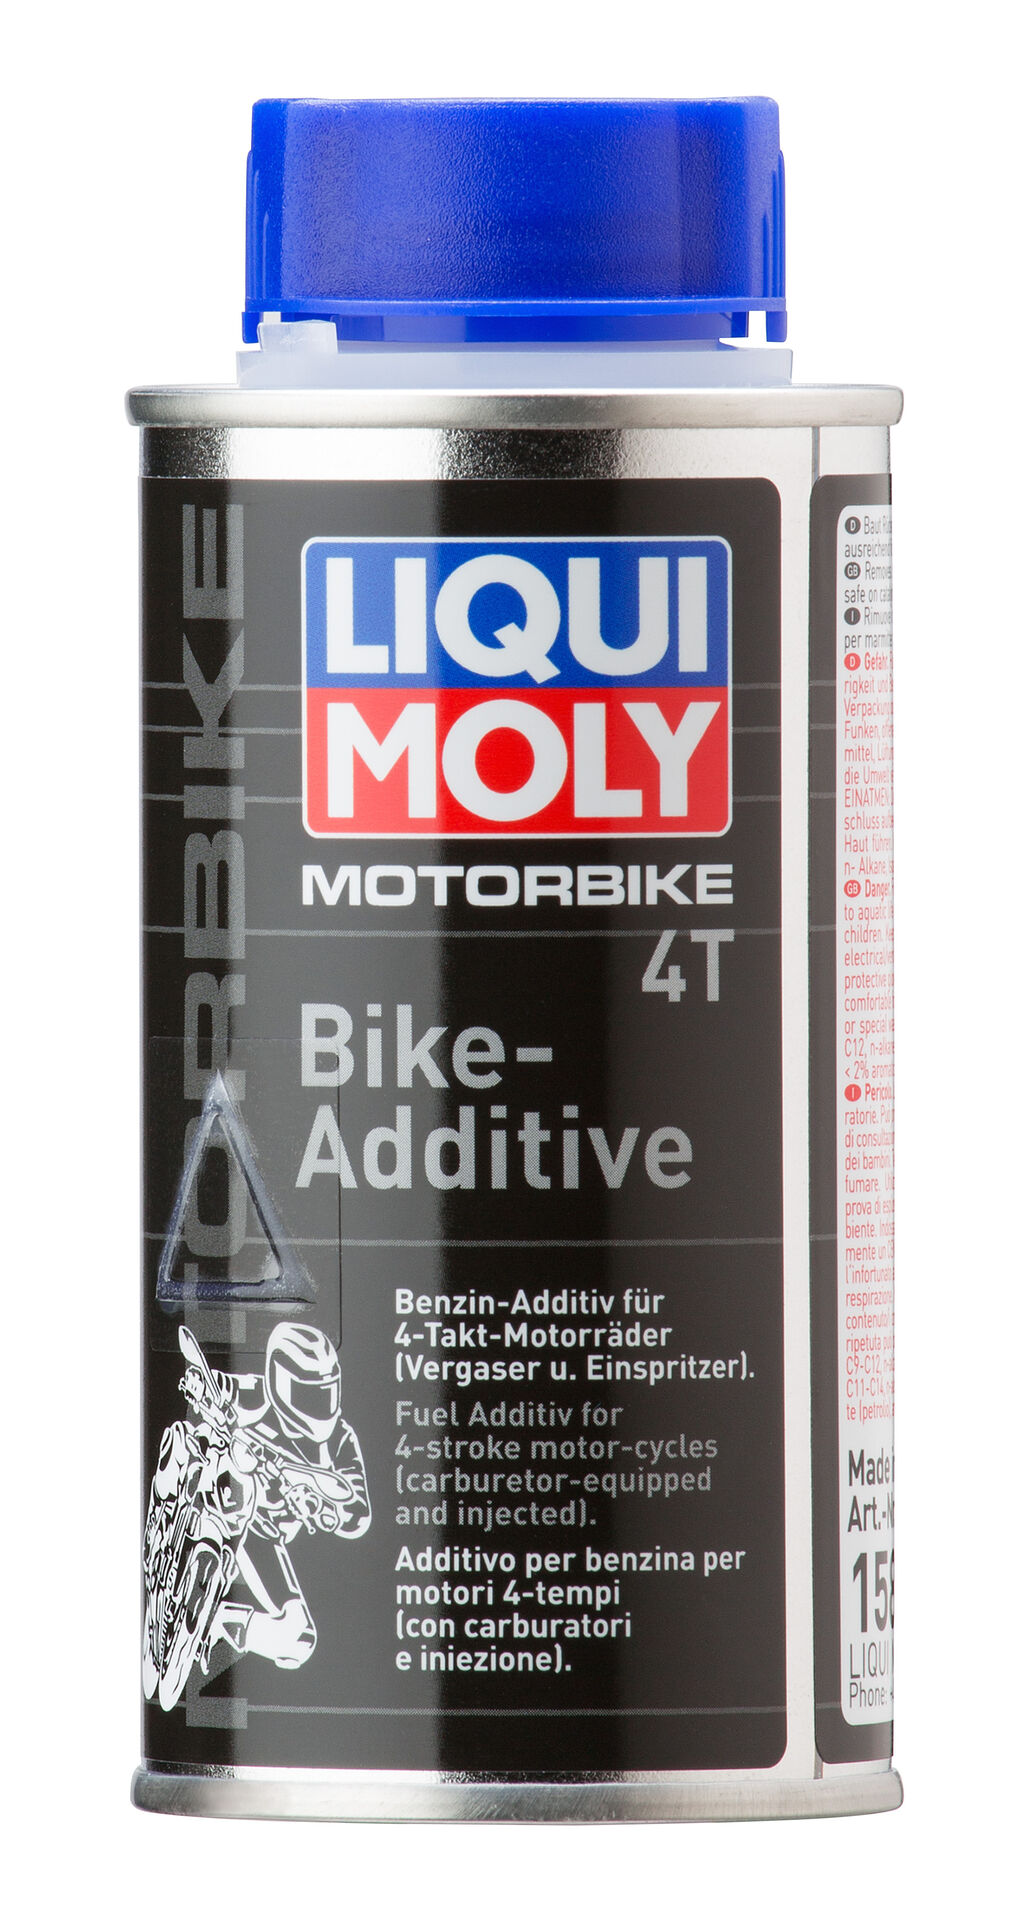 Liqui Moly 125ml Motorbike 4T Bike-Additive Benzin-Additiv für 4-Takt